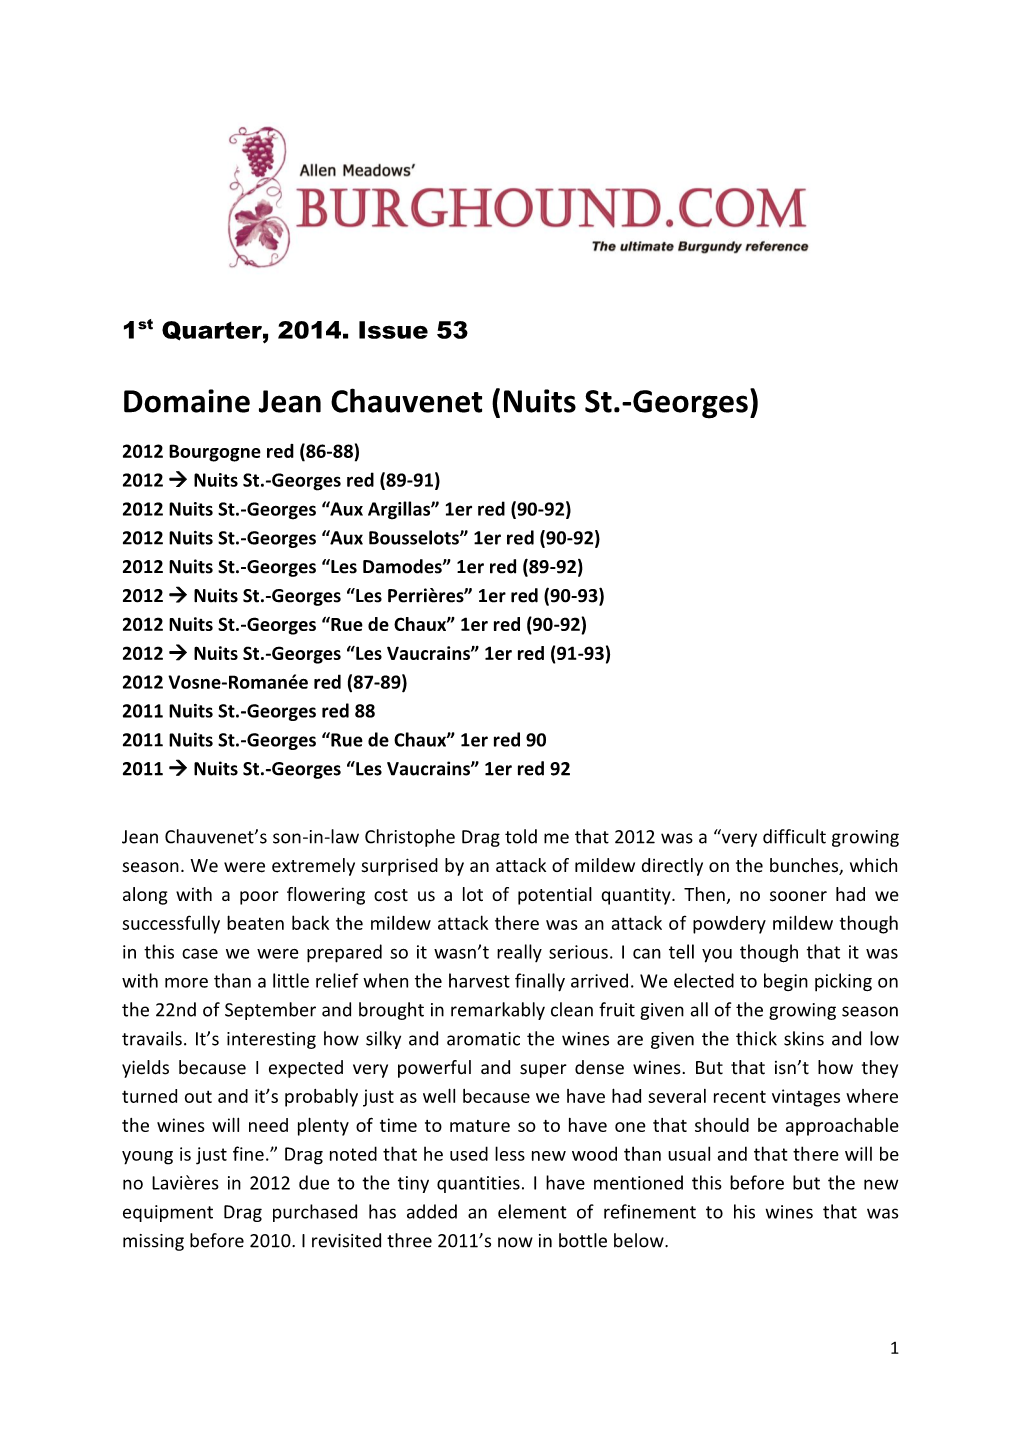 Domaine Jean Chauvenet (Nuits St.-Georges)